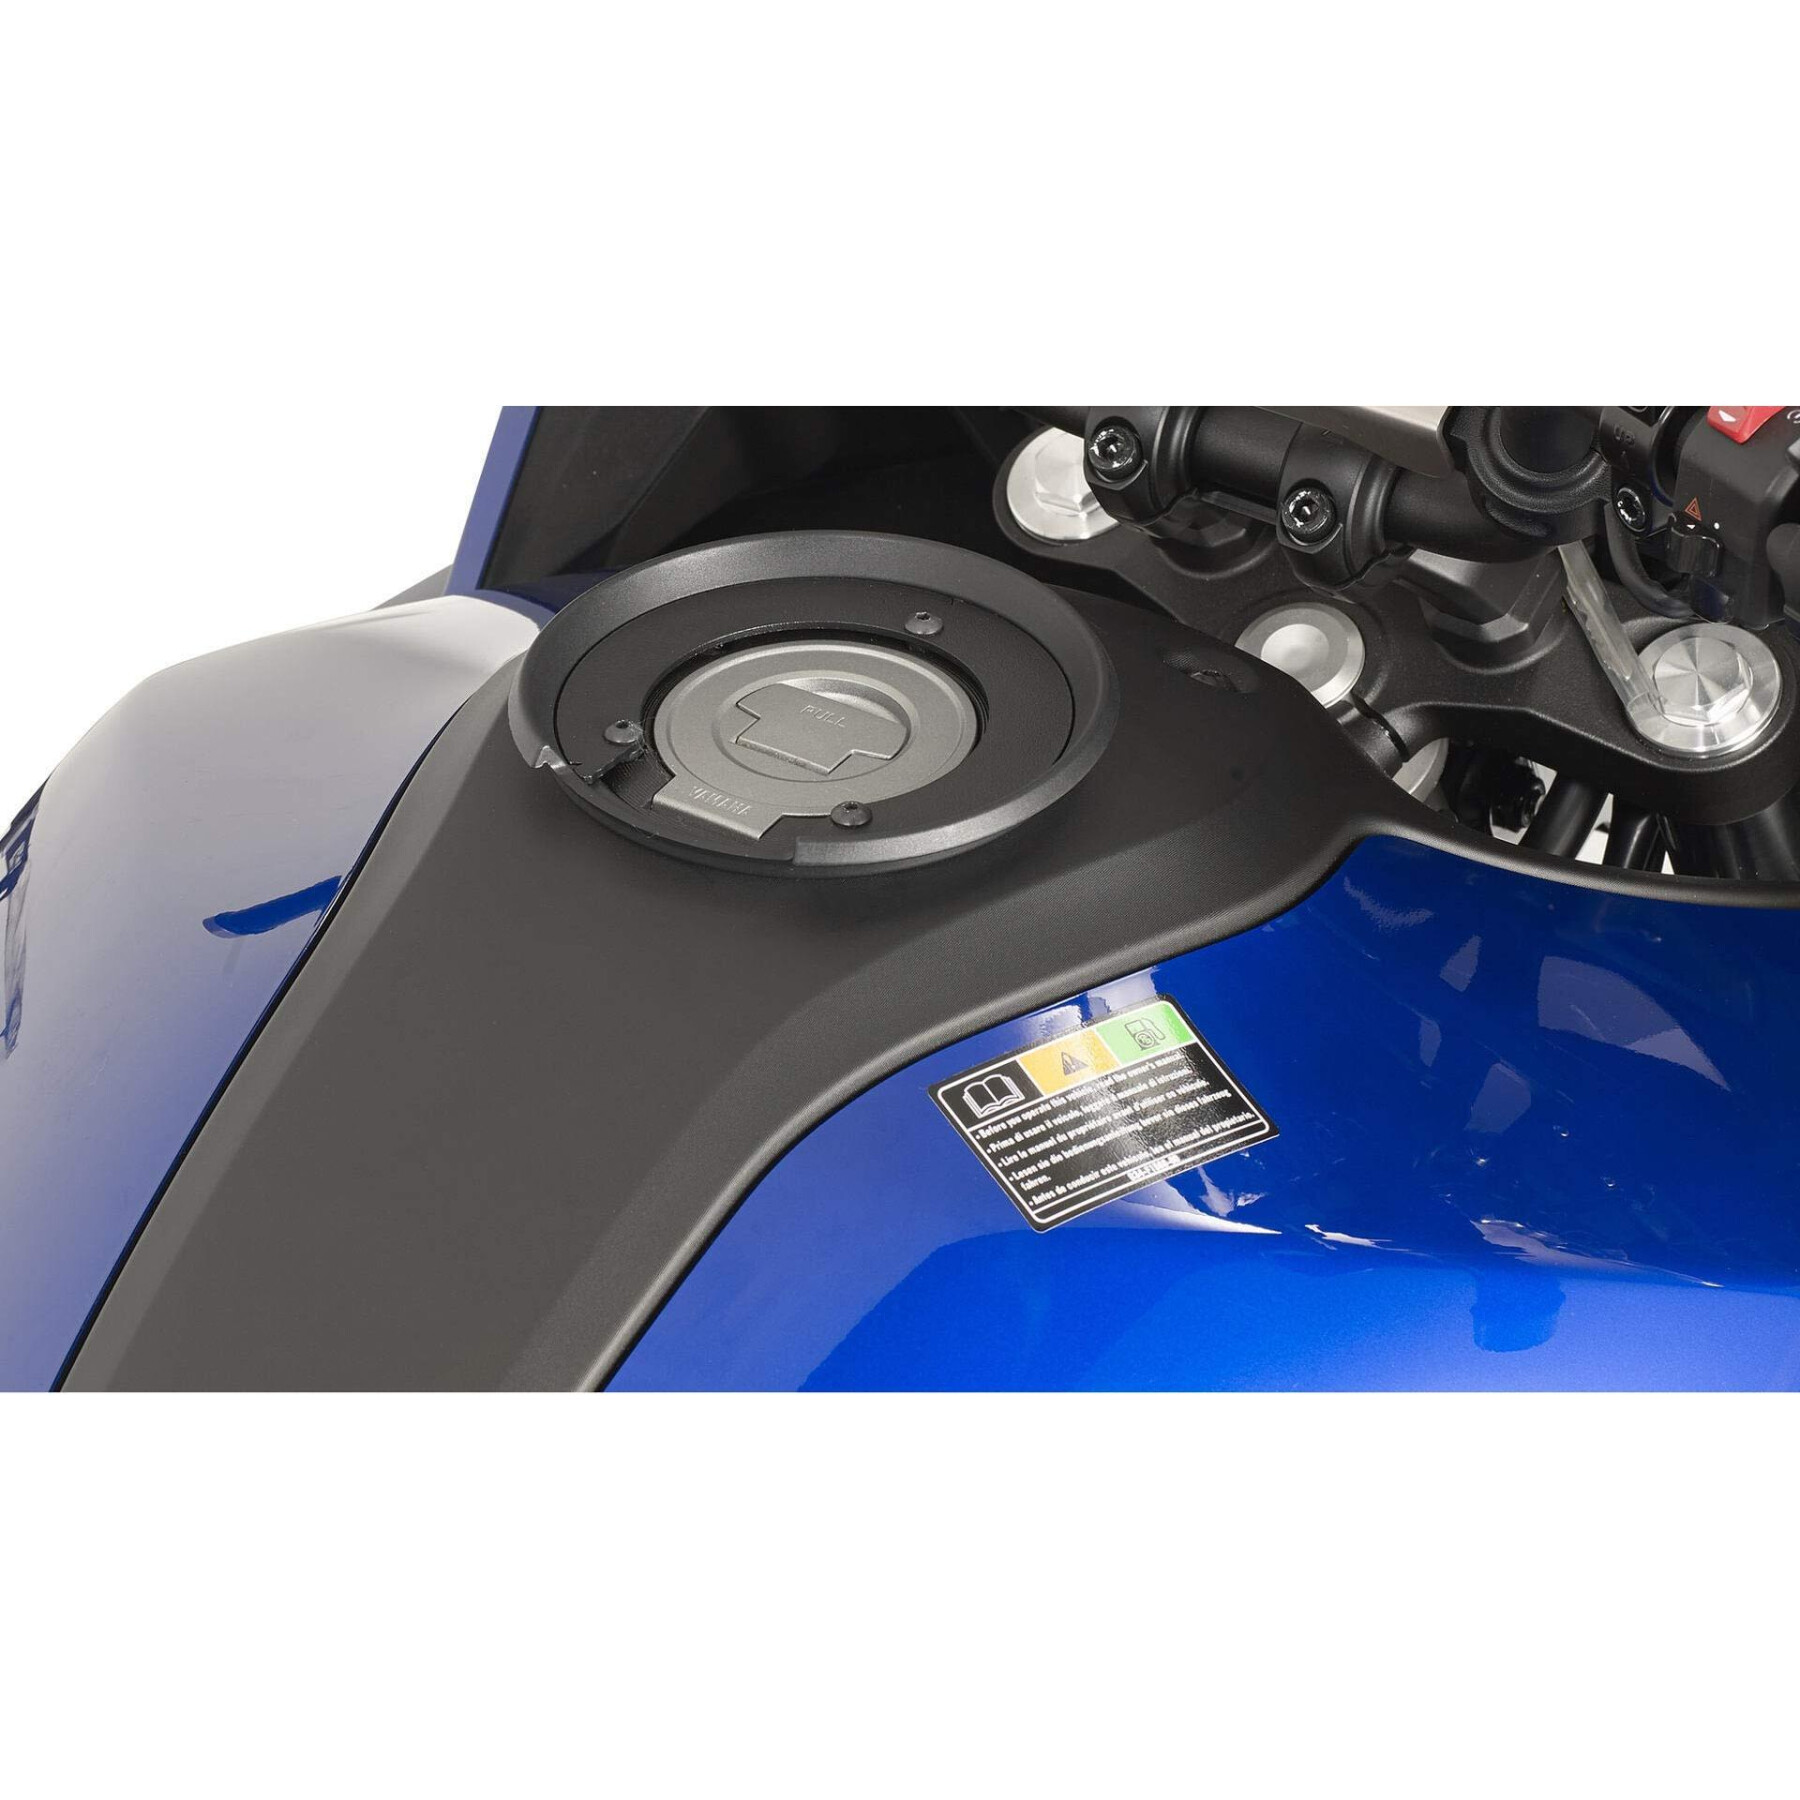 Bague réservoir moto IXS quick-lock TF21